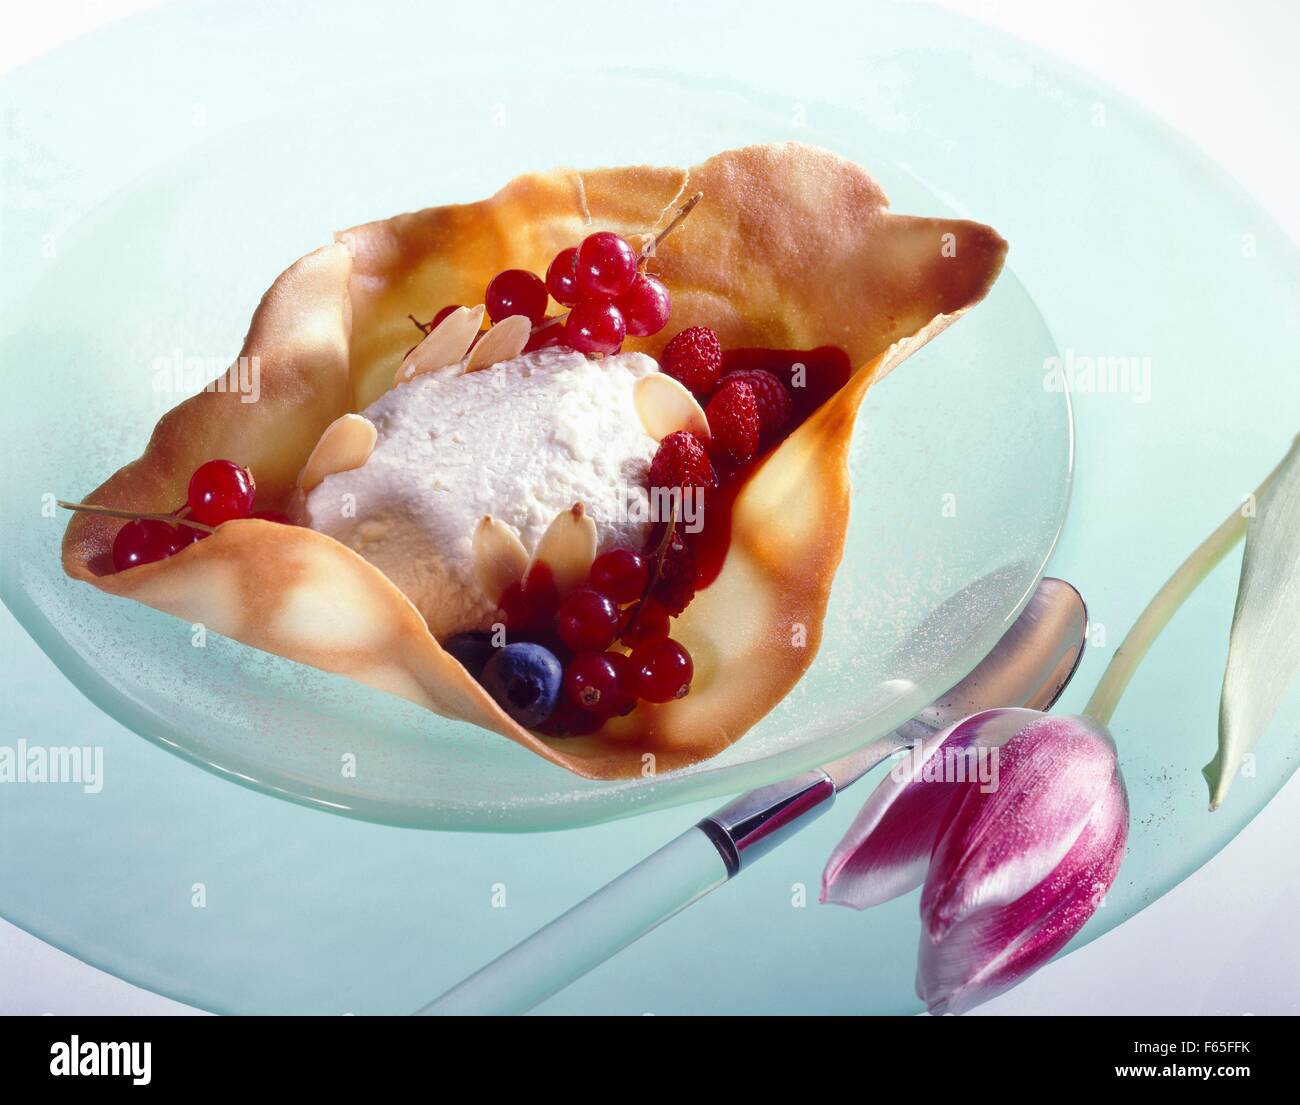 Tuile galleta con fromage blanc y frutas de verano Foto de stock